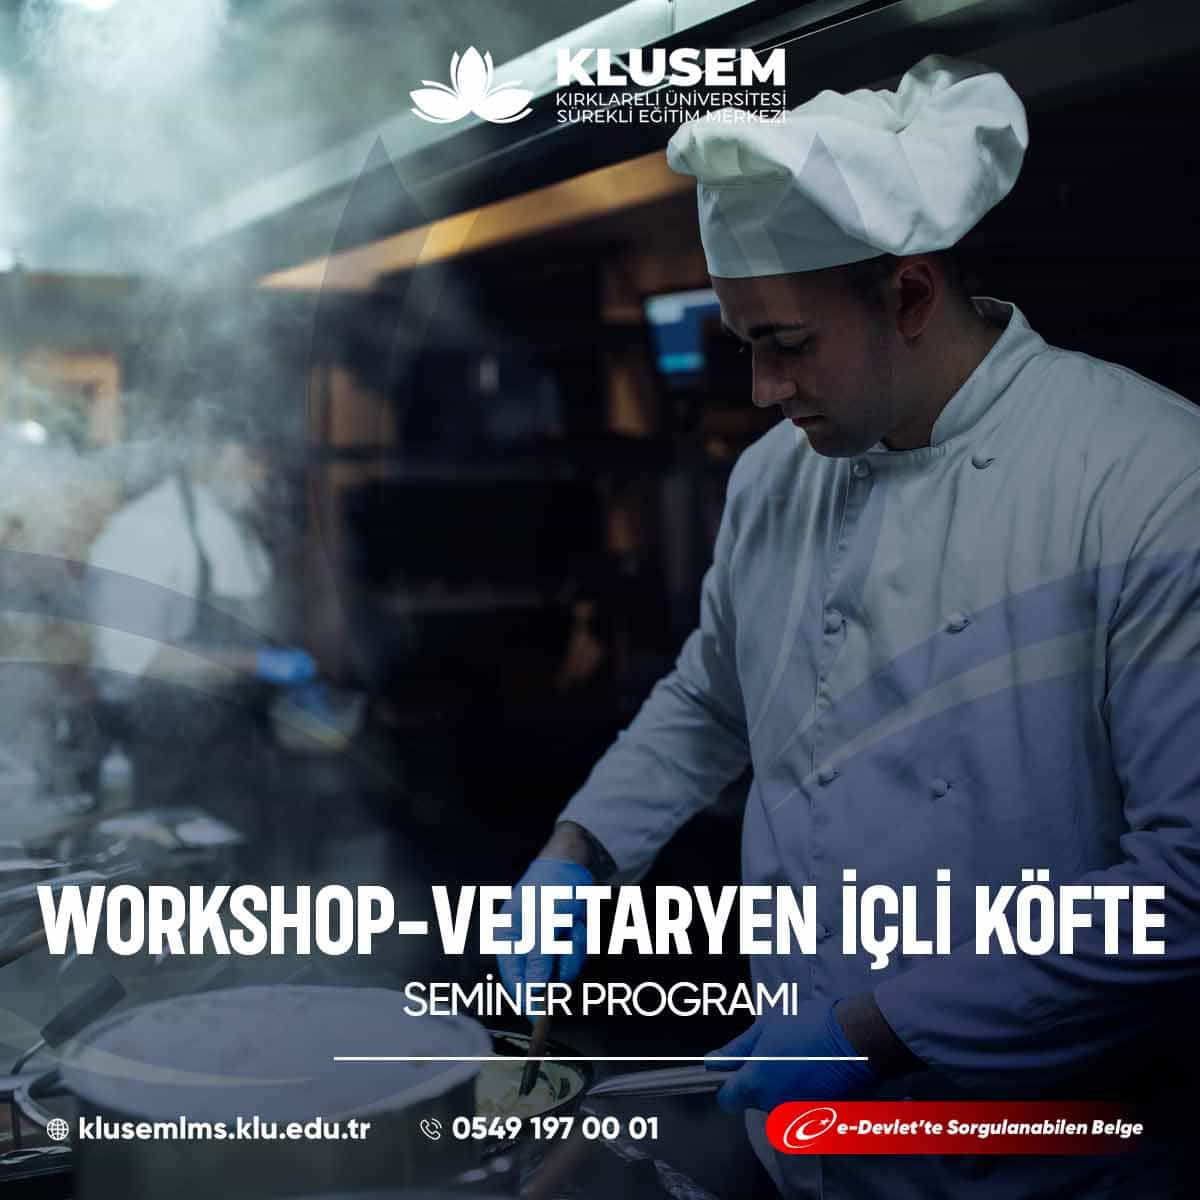 Vejetaryen içli köfte workshopları, geleneksel içli köfte lezzetini et kullanmadan yapmayı öğrenme fırsatı sunar.